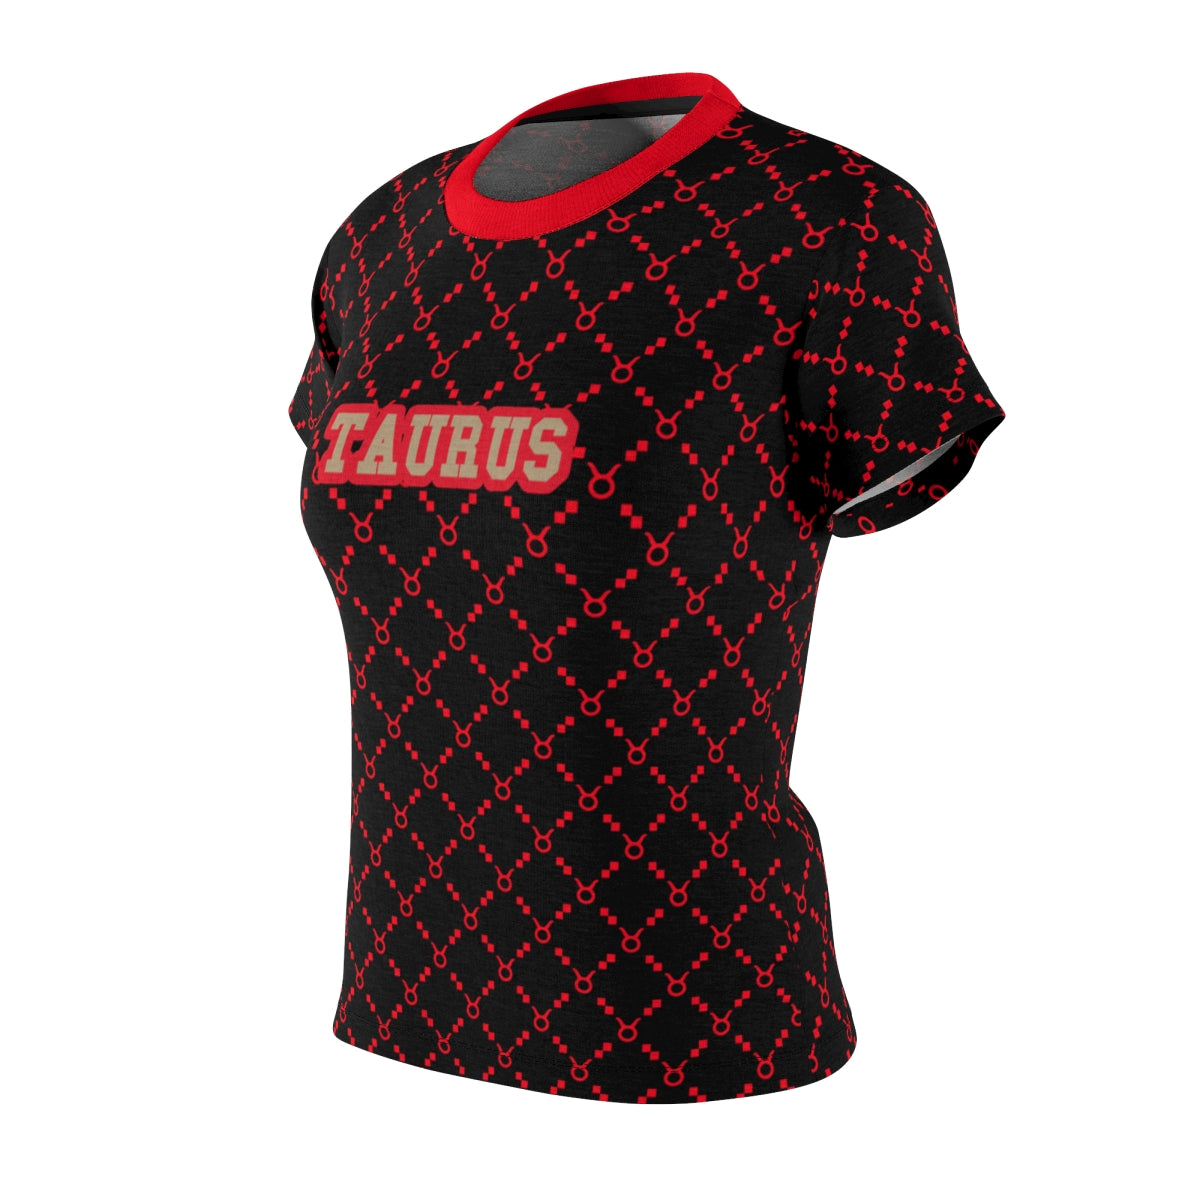 Taurus G-Style Shirt - Red